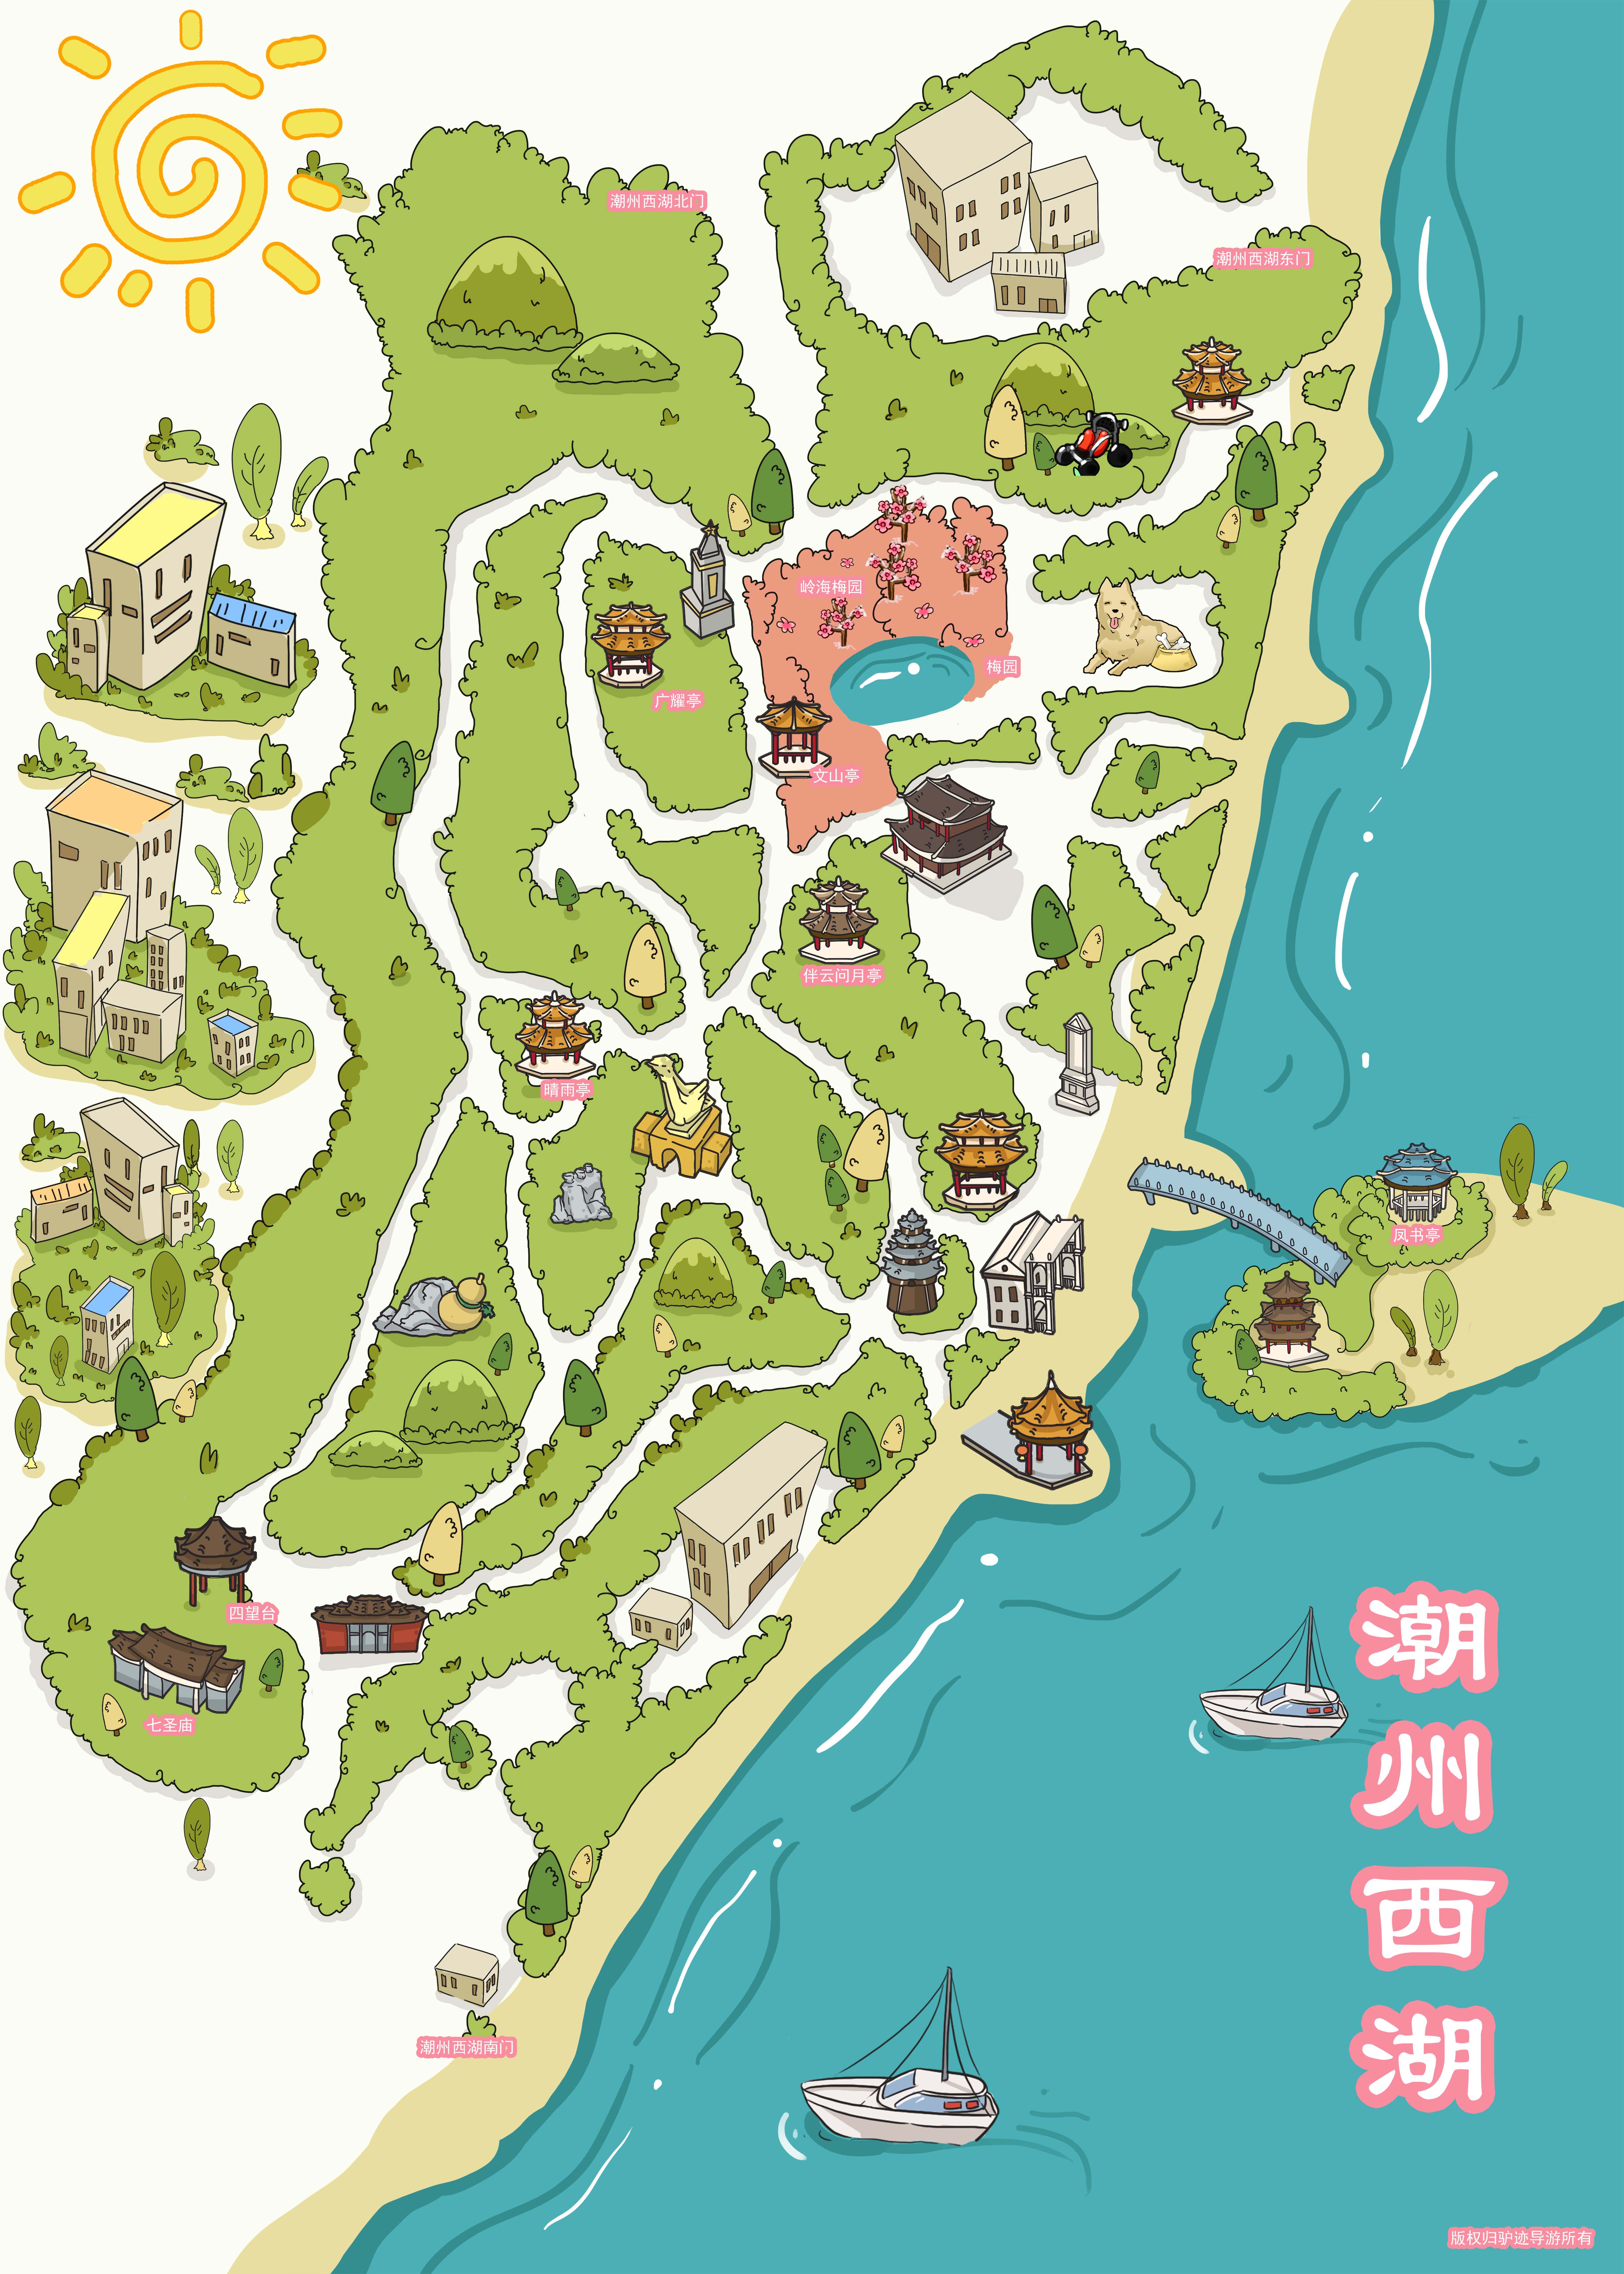 潮州西湖公园手机导游【全景地图、园内导航、